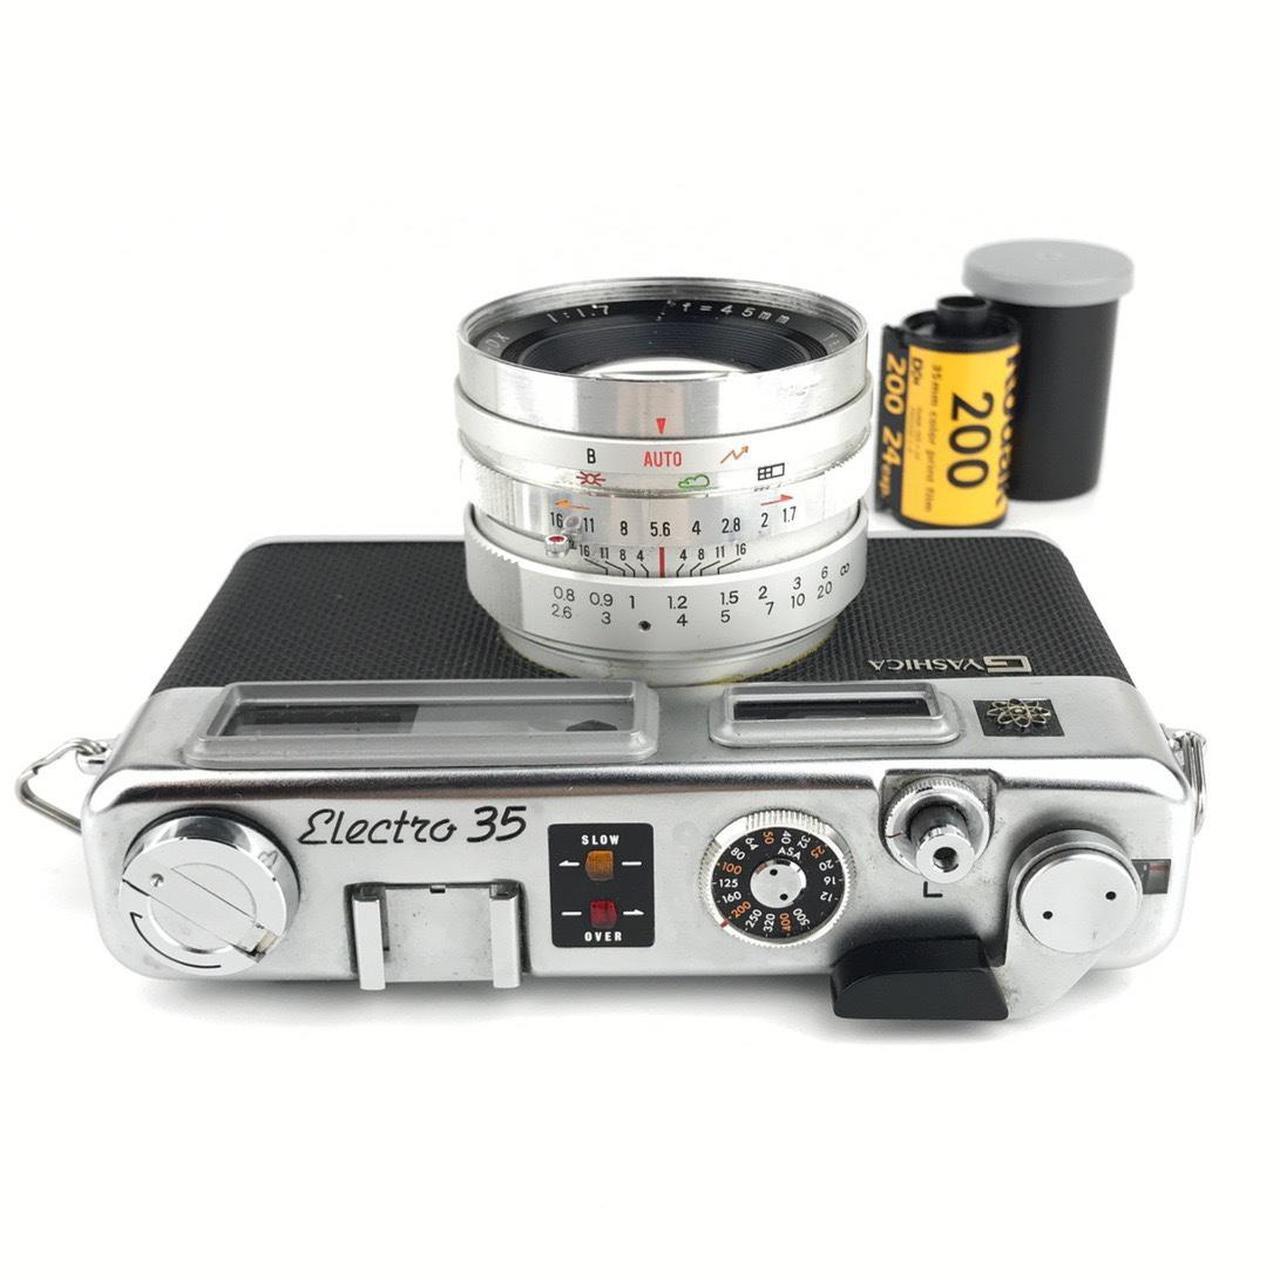 Product Image 2 - Yashica Electro 35 Film Camera